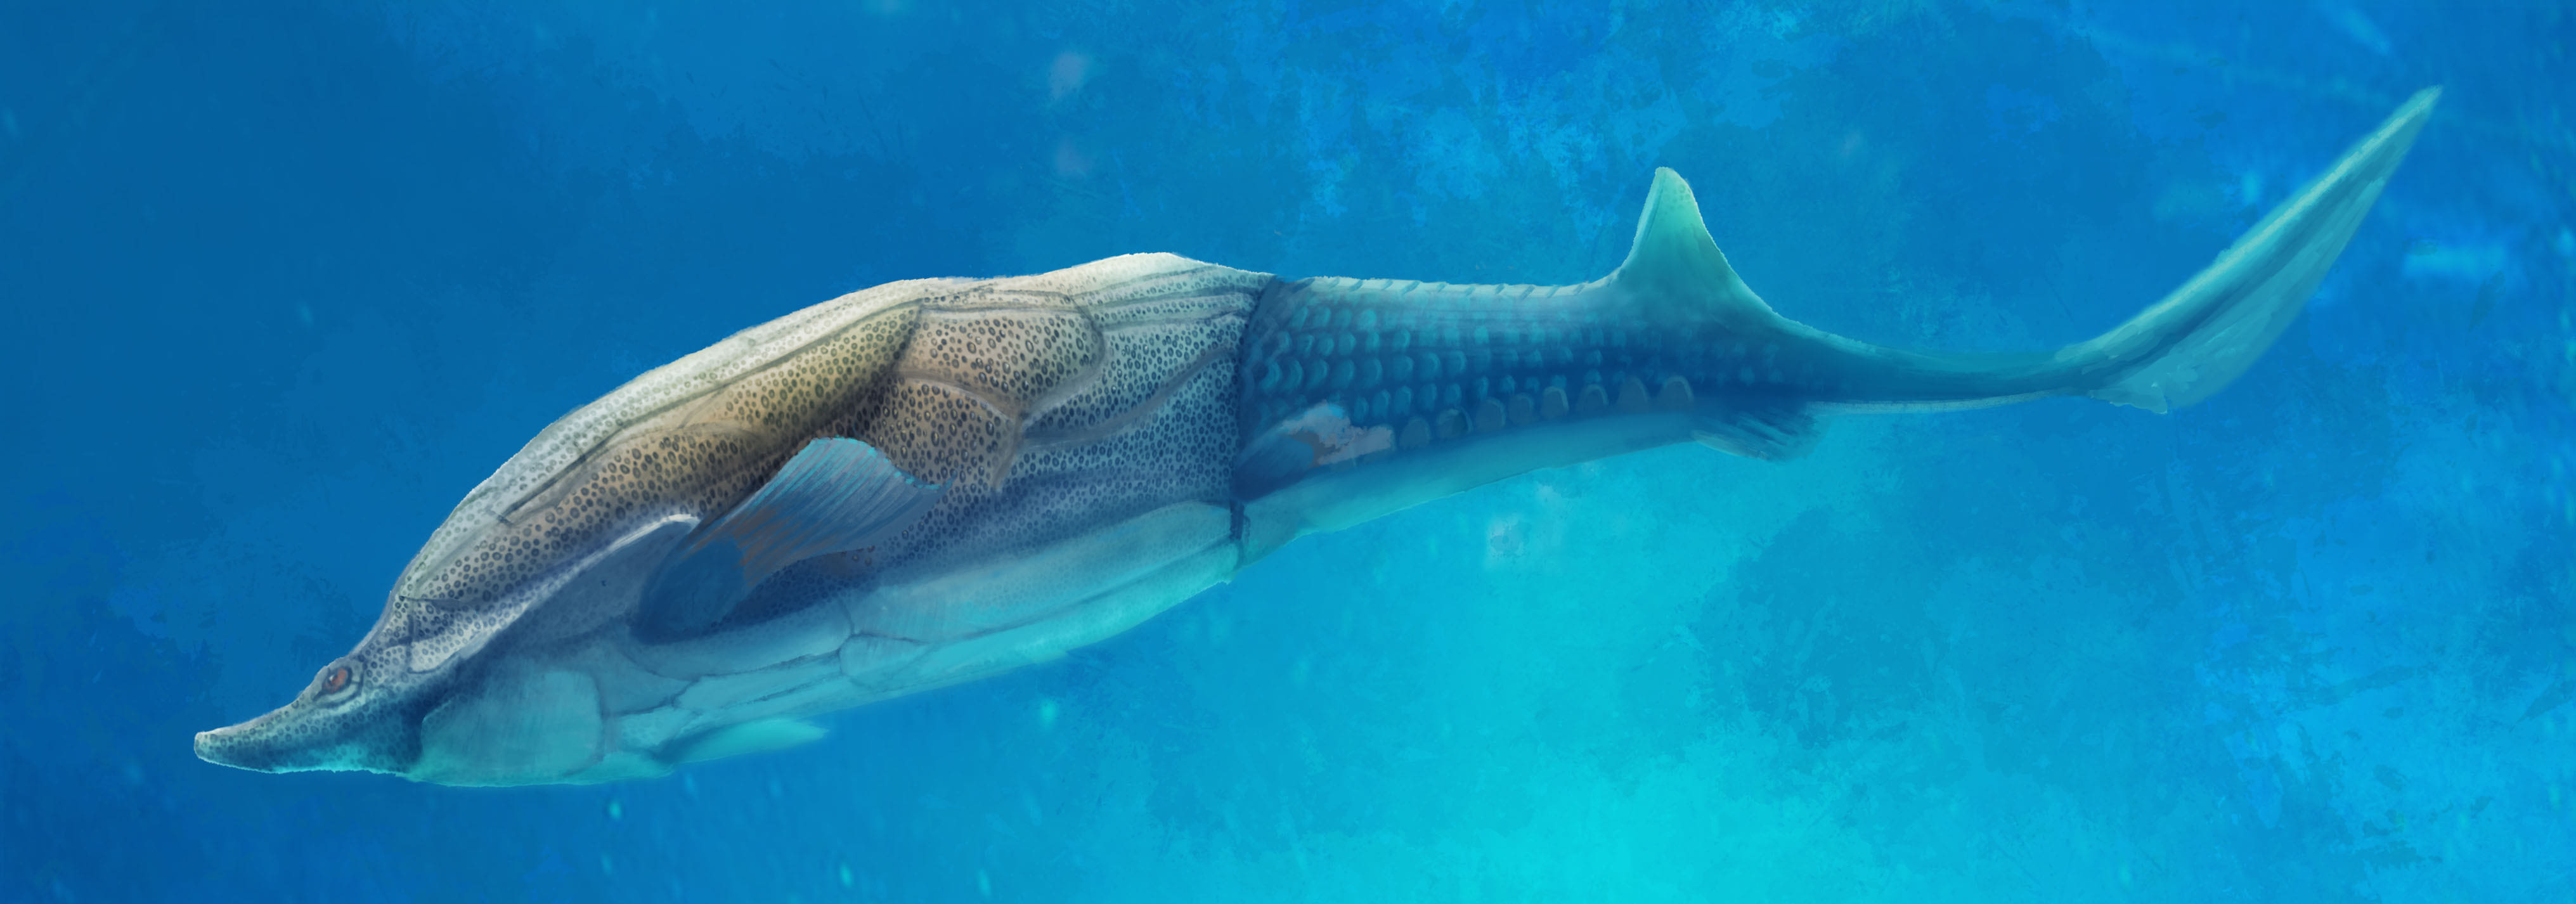 我国科学家的古鱼新发现揭示人类颌骨来源之谜